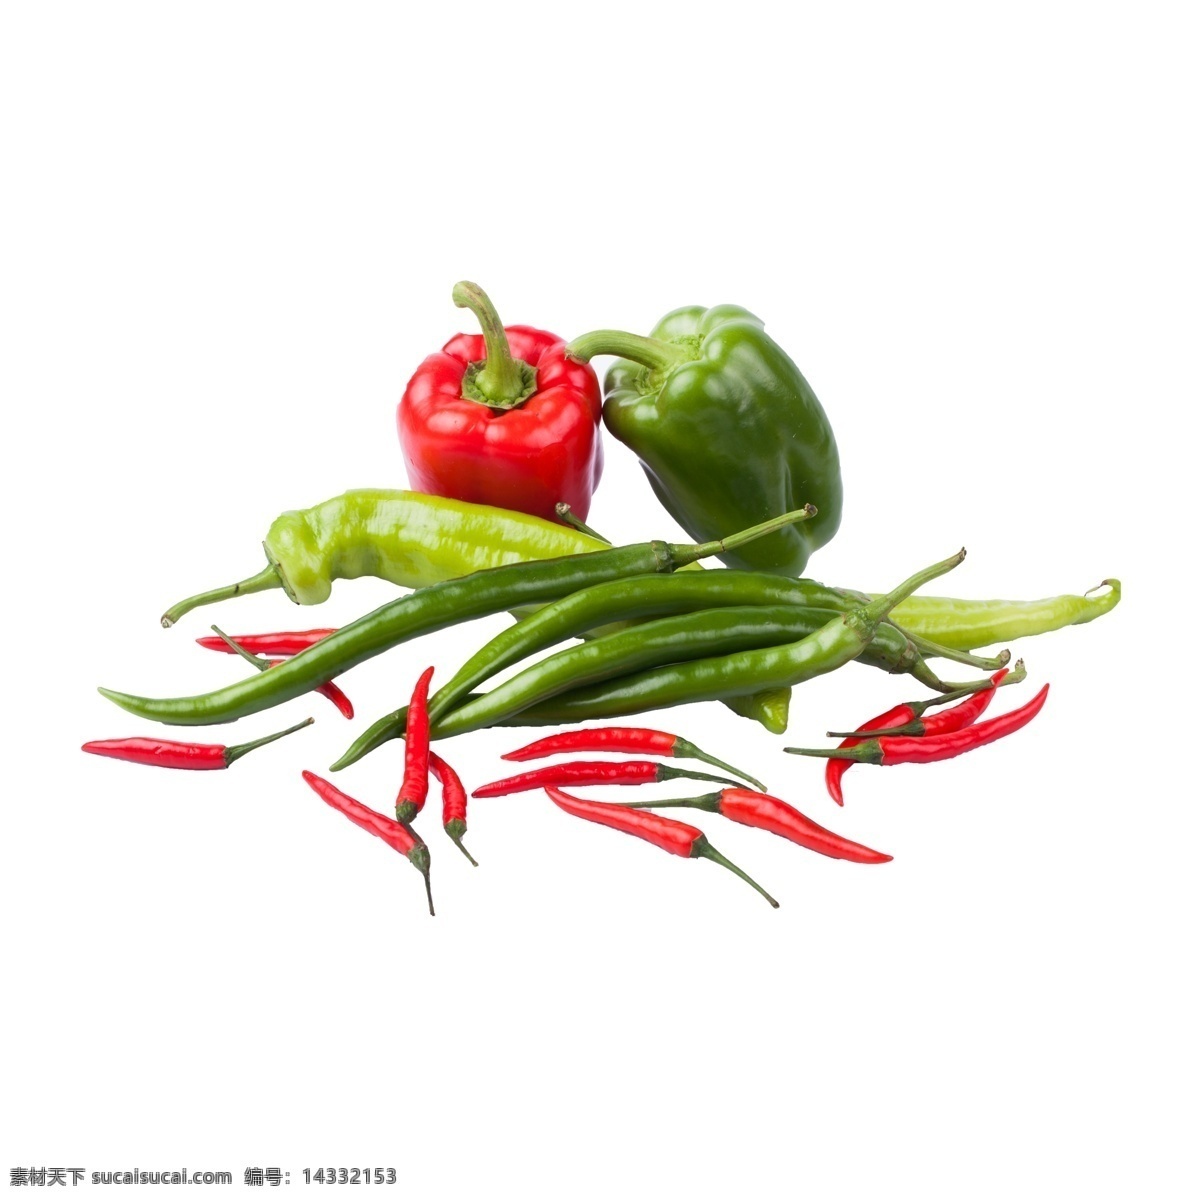 辣椒 组合 实物 拍摄 免 抠 尖椒 灯笼椒 红辣椒 小米椒 红 植物 红色 绿色 麻辣 川椒